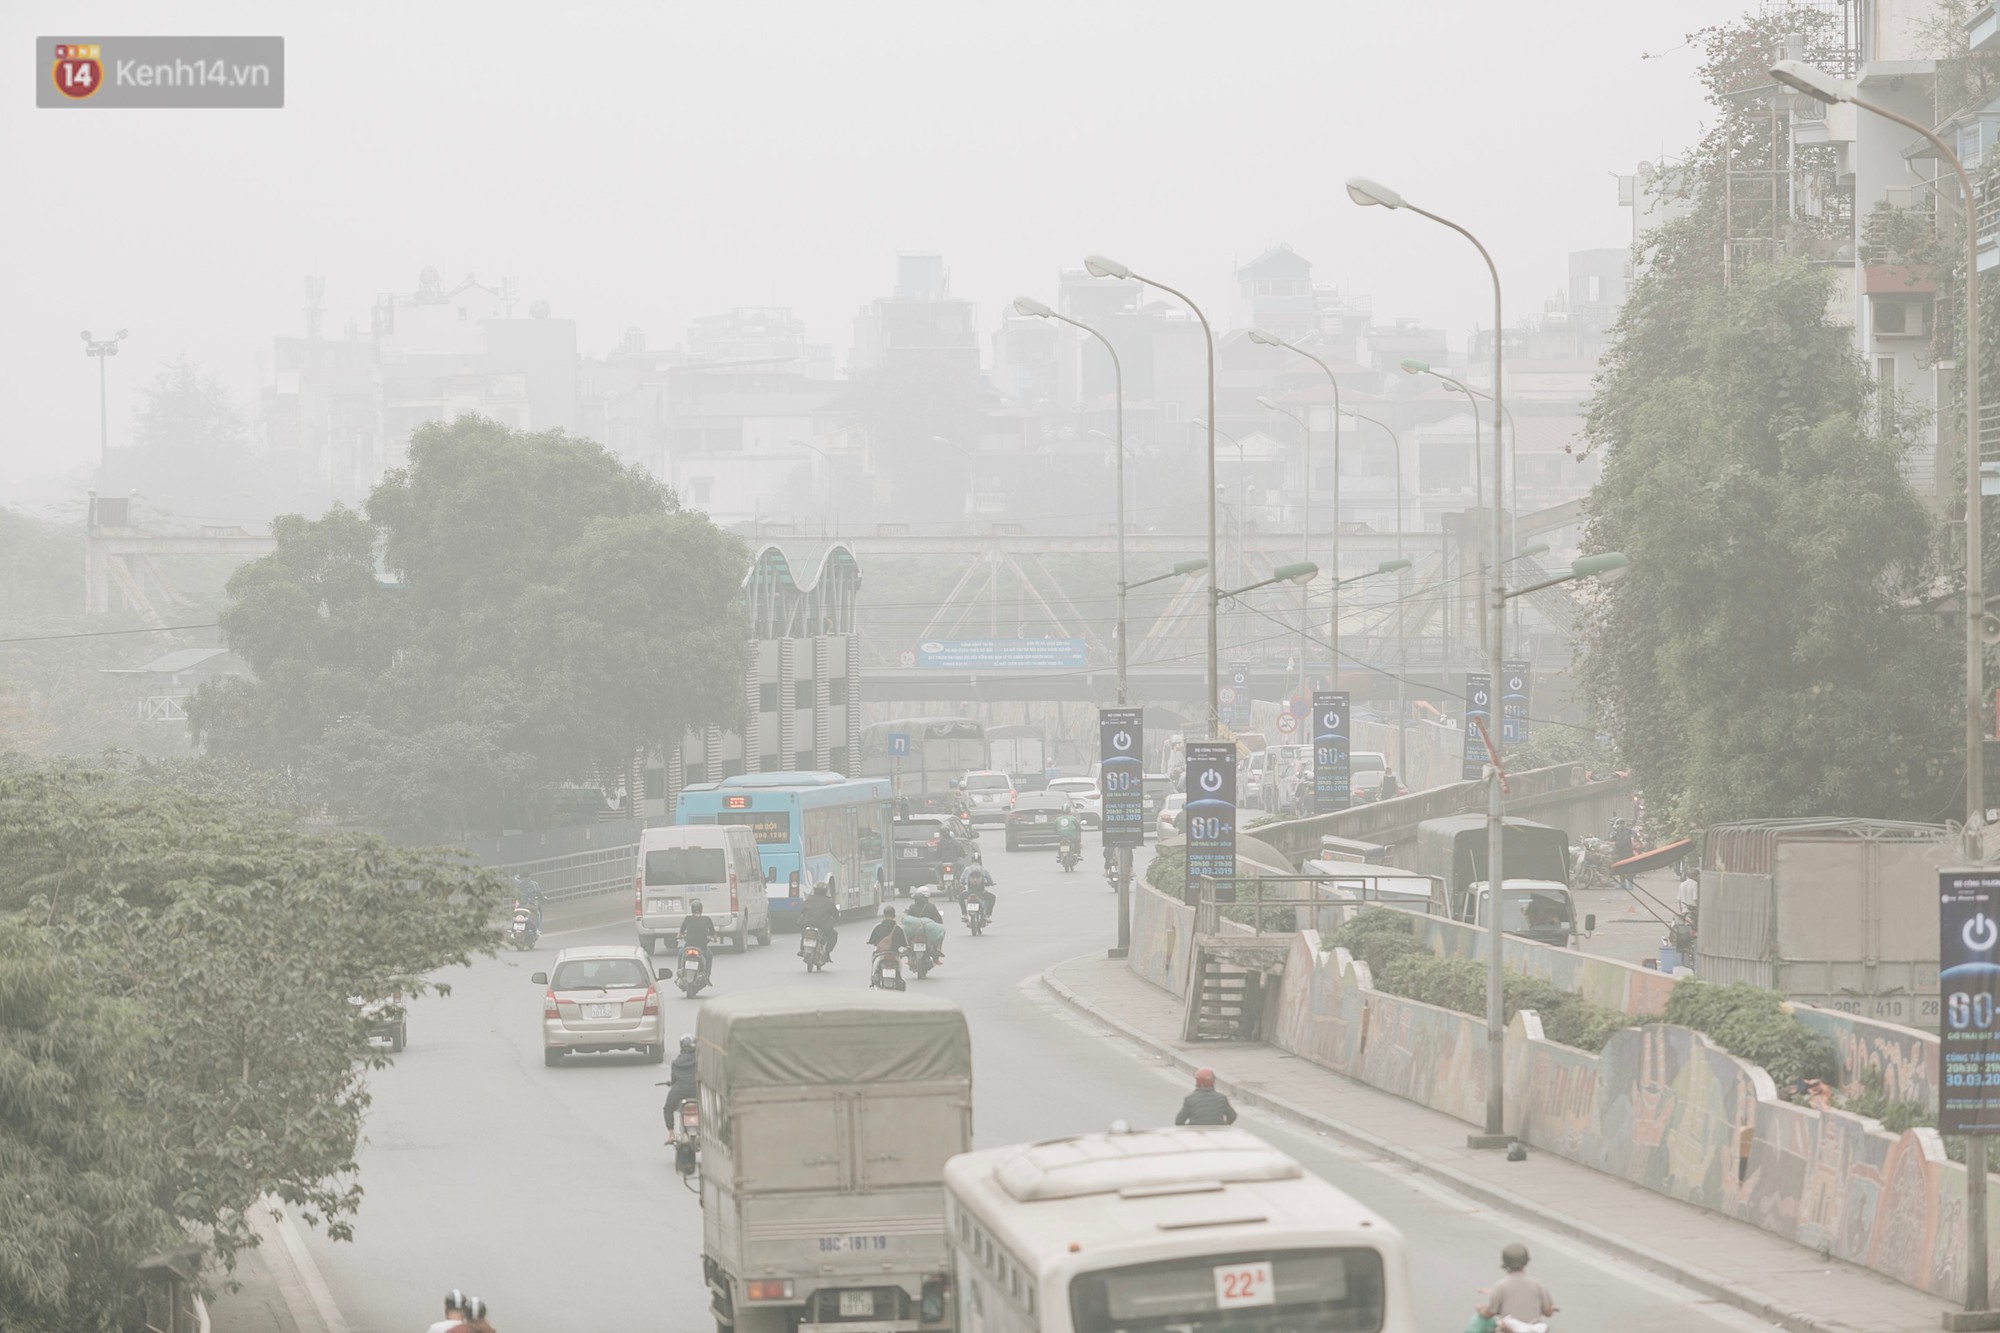 Hà Nội ngập trong sương bụi mù mịt bao phủ tầm nhìn: Tình trạng ô nhiễm không khí đáng báo động! - Ảnh 16.